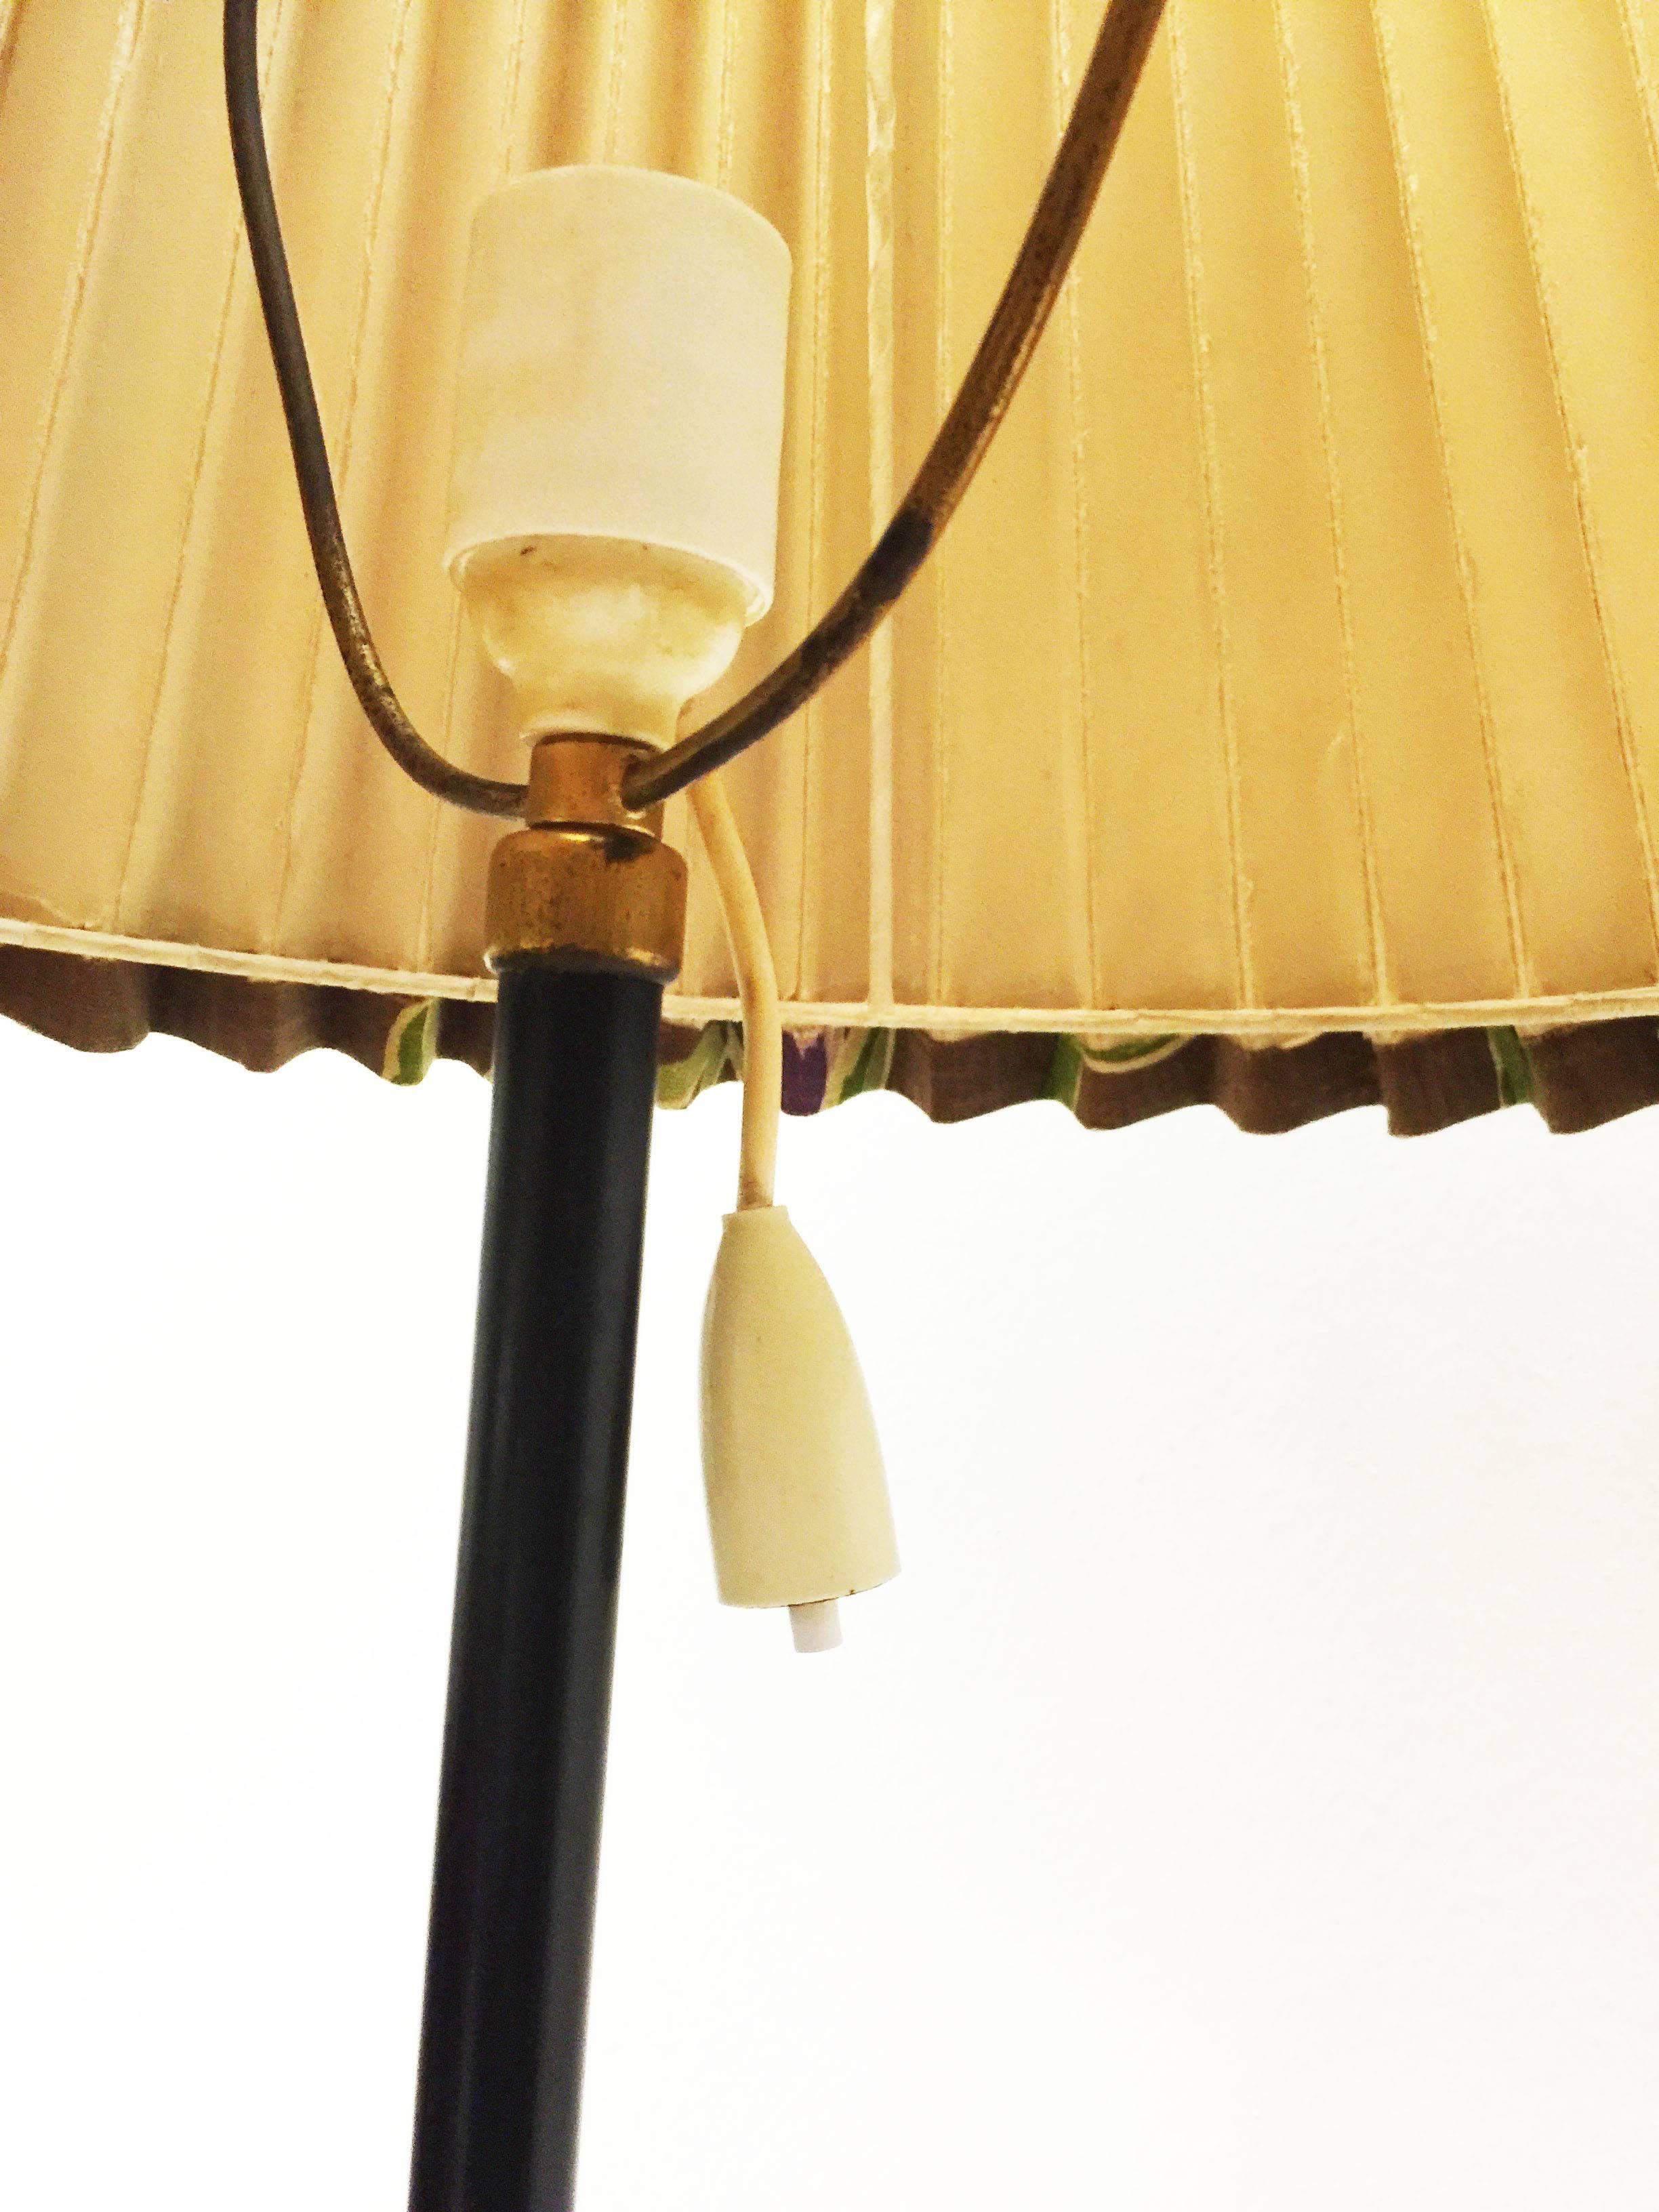 Seltener J.T. Kalmar-Lampe aus den frühen 1960er Jahren.
Fuß aus Messing, schwarz lackiertes Messingrohr, plissierter Leinenschirm mit Blumenmotiv. 
Kleine Patina am Messingfuß.